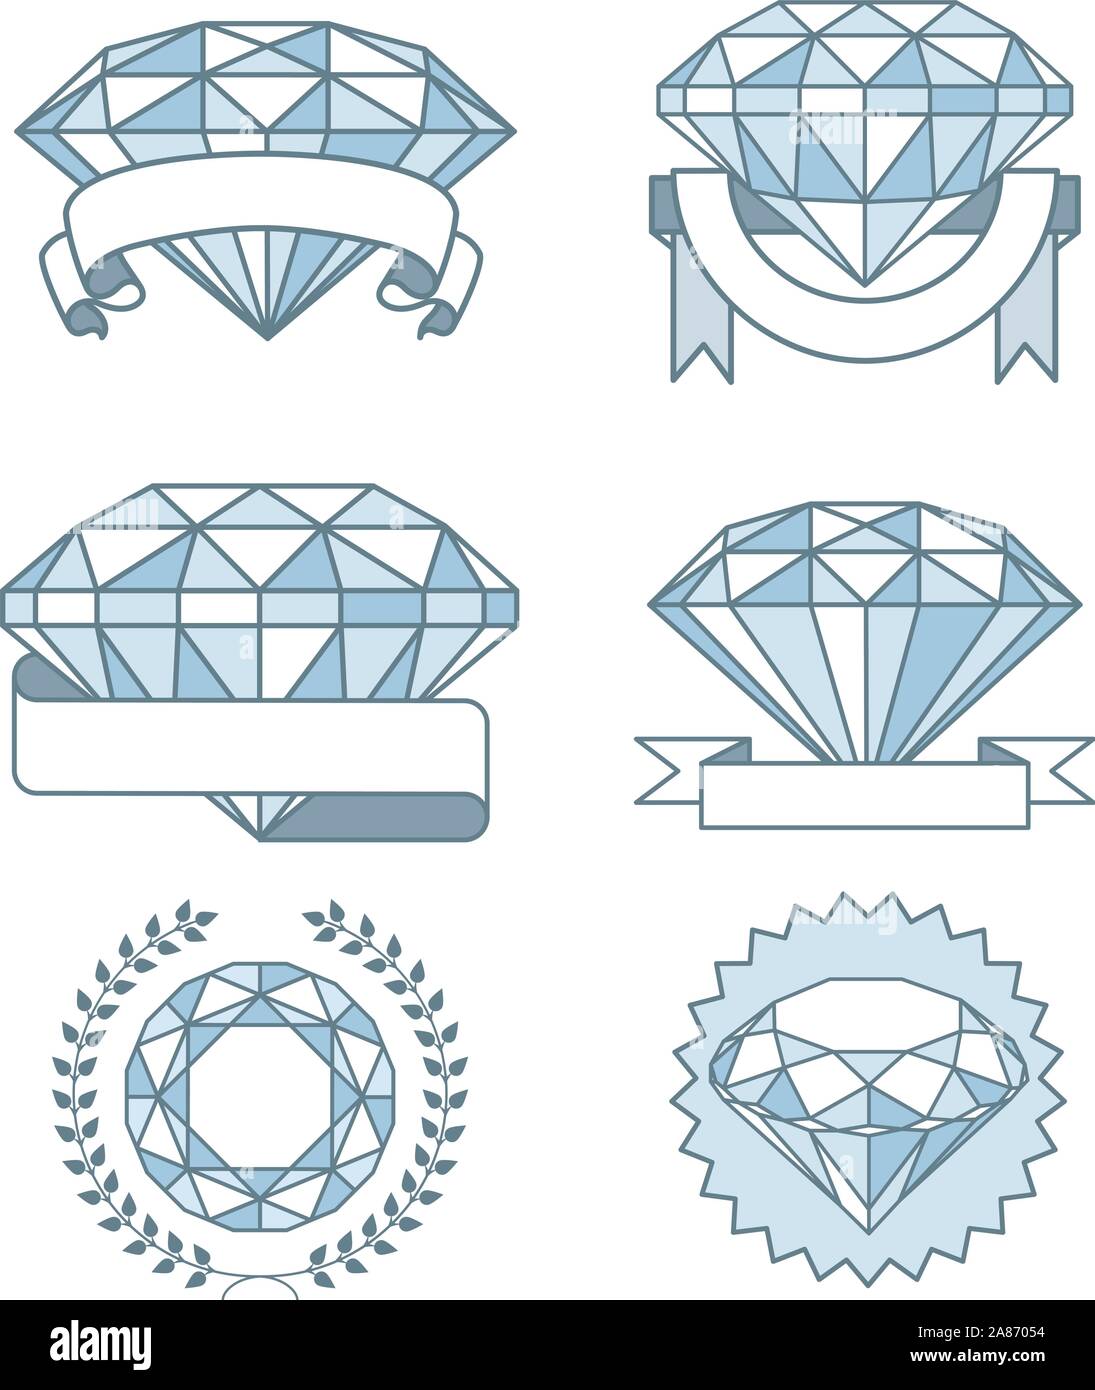 Satz von funkelnden Diamanten mit Bannern Auszeichnung, mit sechs verschiedenen Diamanten Steine in verschiedenen Größen und durch viele verschiedene Arten von Banner abgerundet Stock Vektor